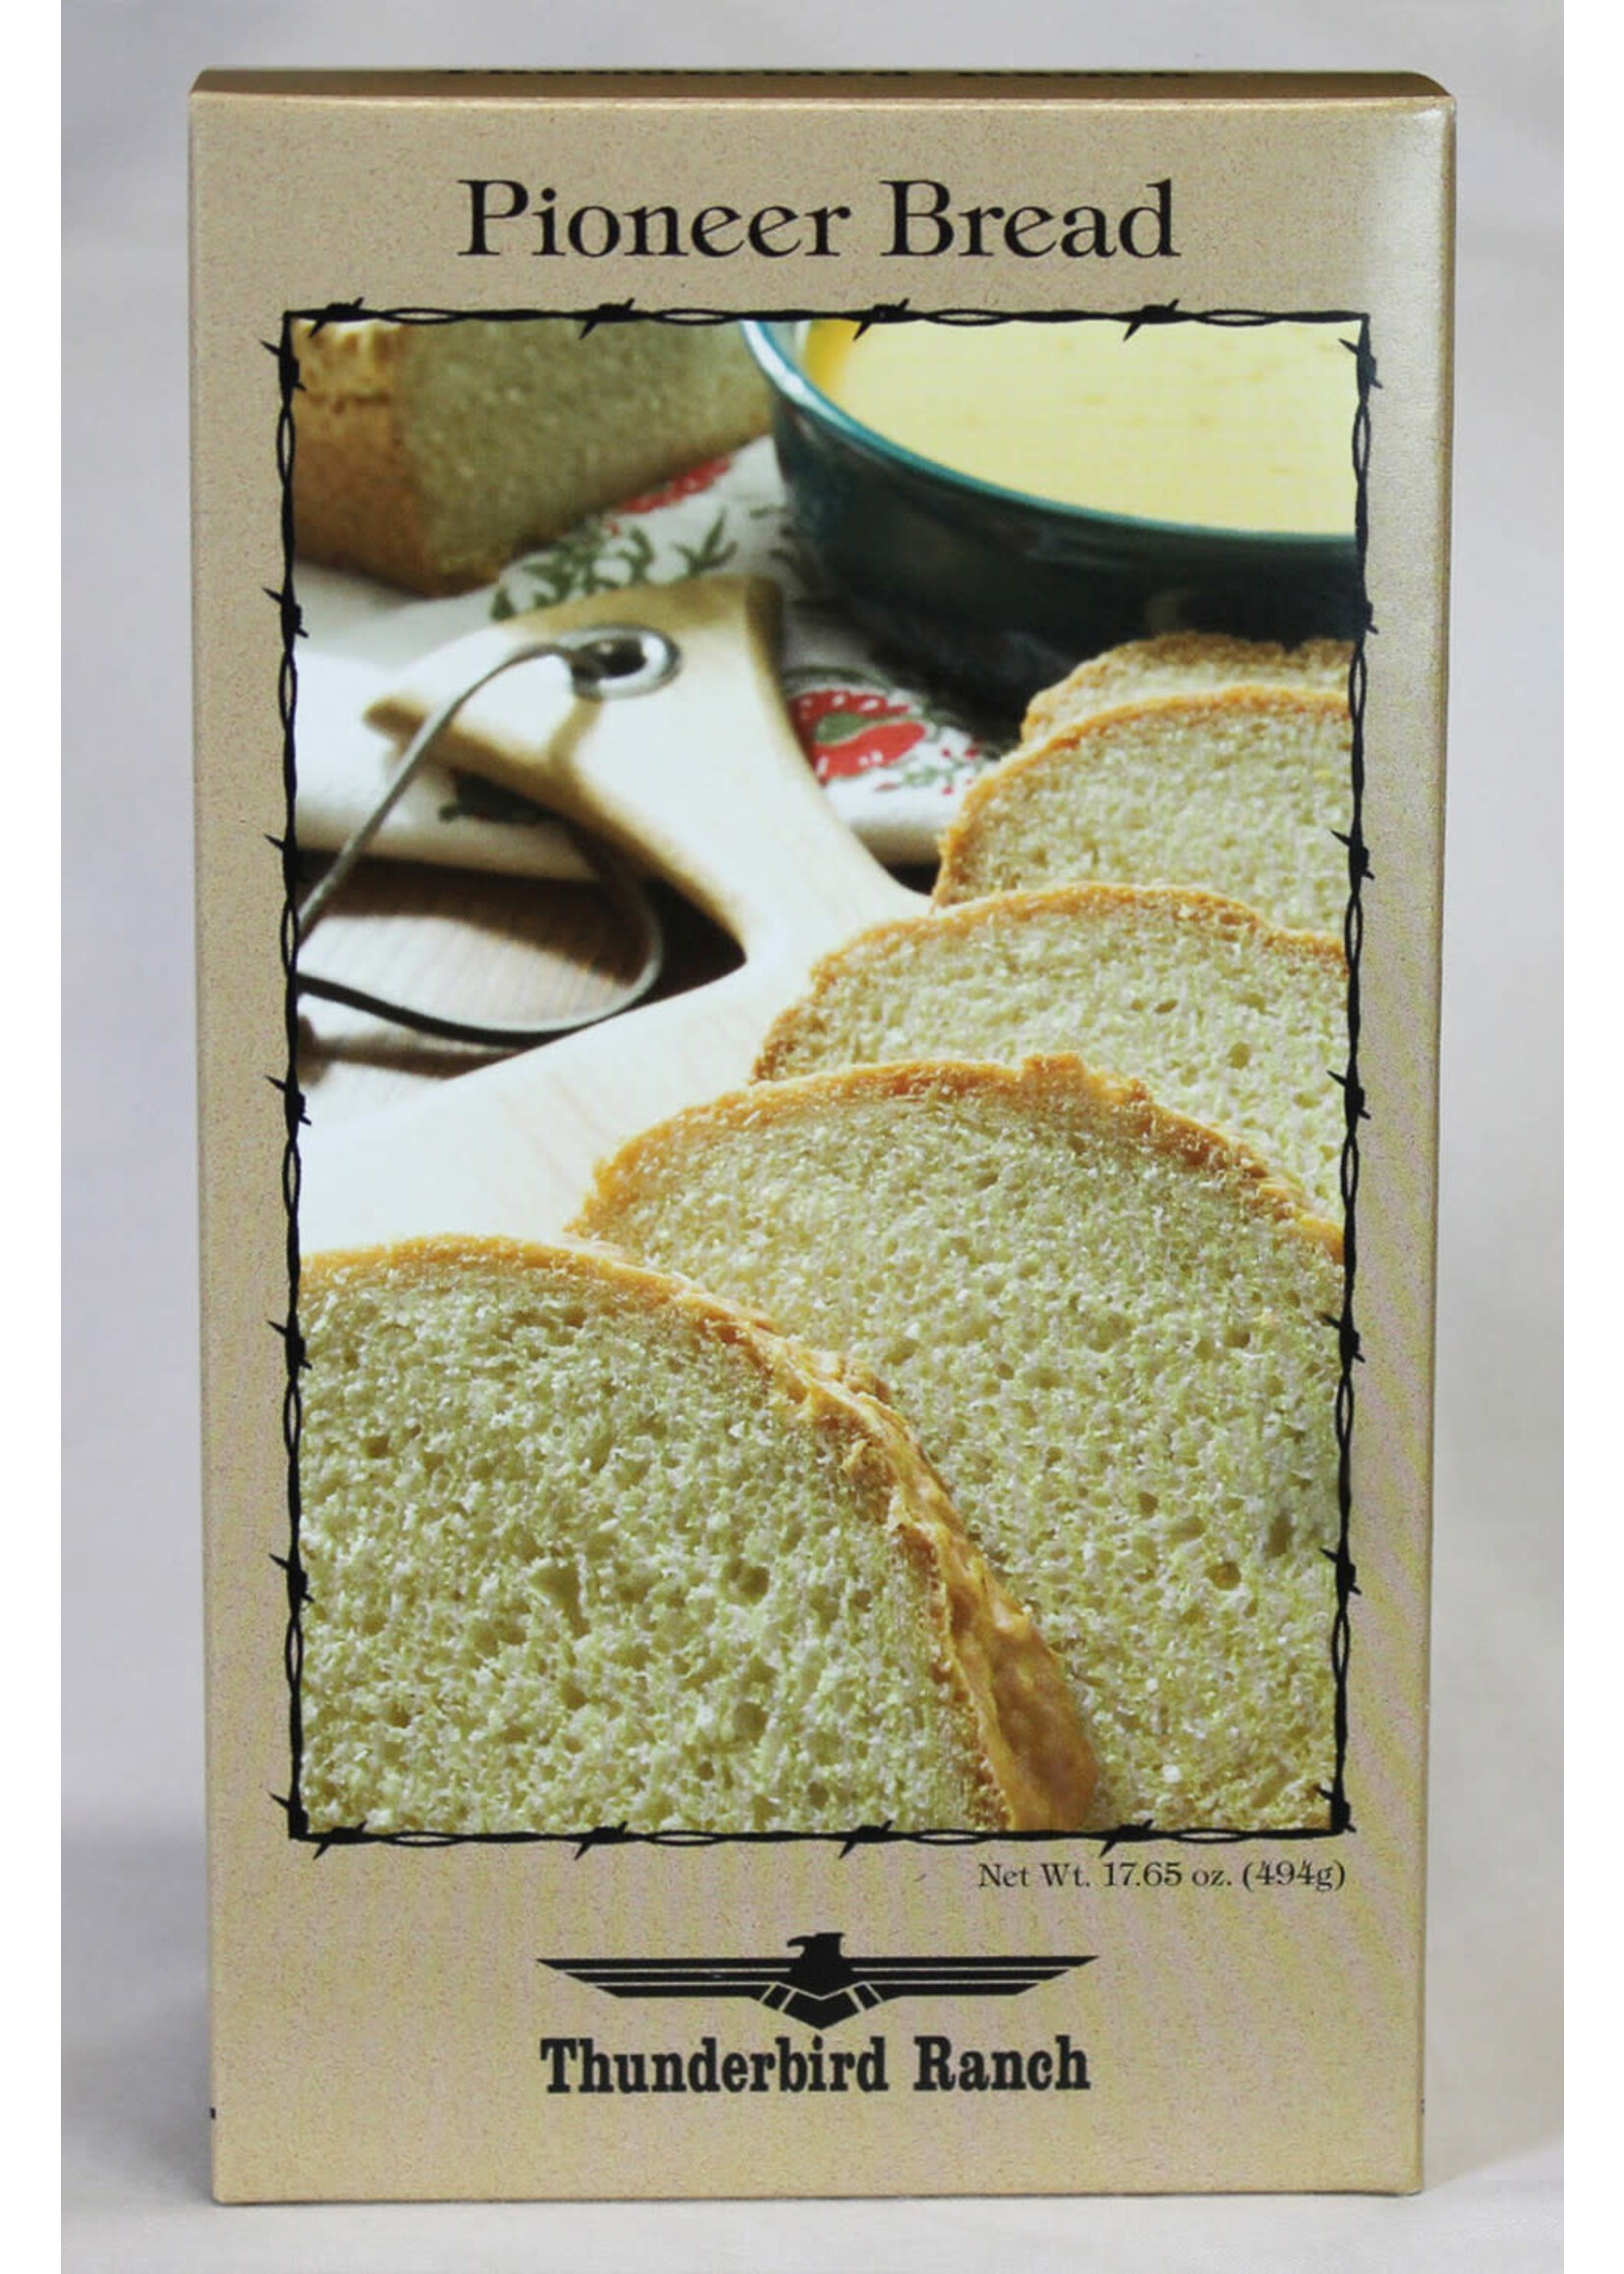 Pioneer Bread Mix 17.65oz